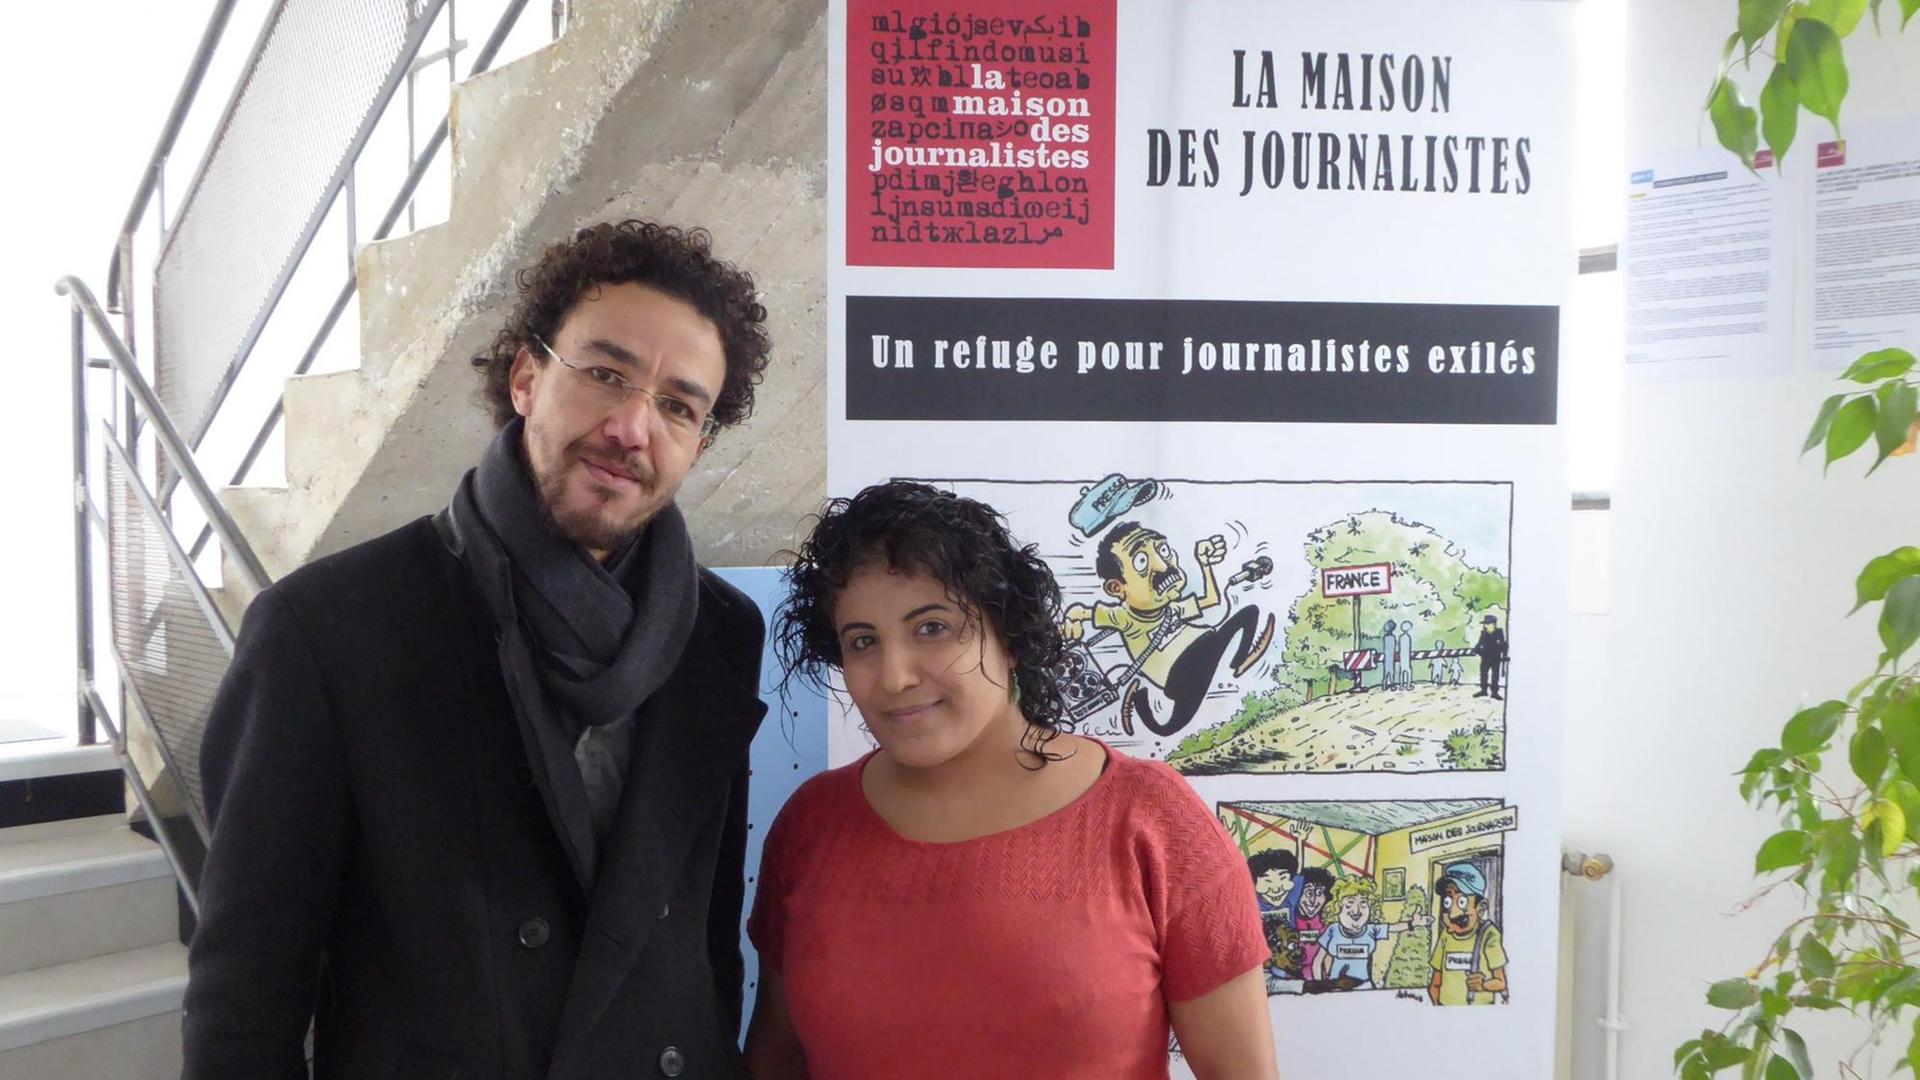 Ein Mann und eine Frau stehen in einem Treppenhaus. Hinter ihnen hängt ein Plakat mit der Aufschrift "La Maison des Journalistes" - "Das Haus der Journalisten"